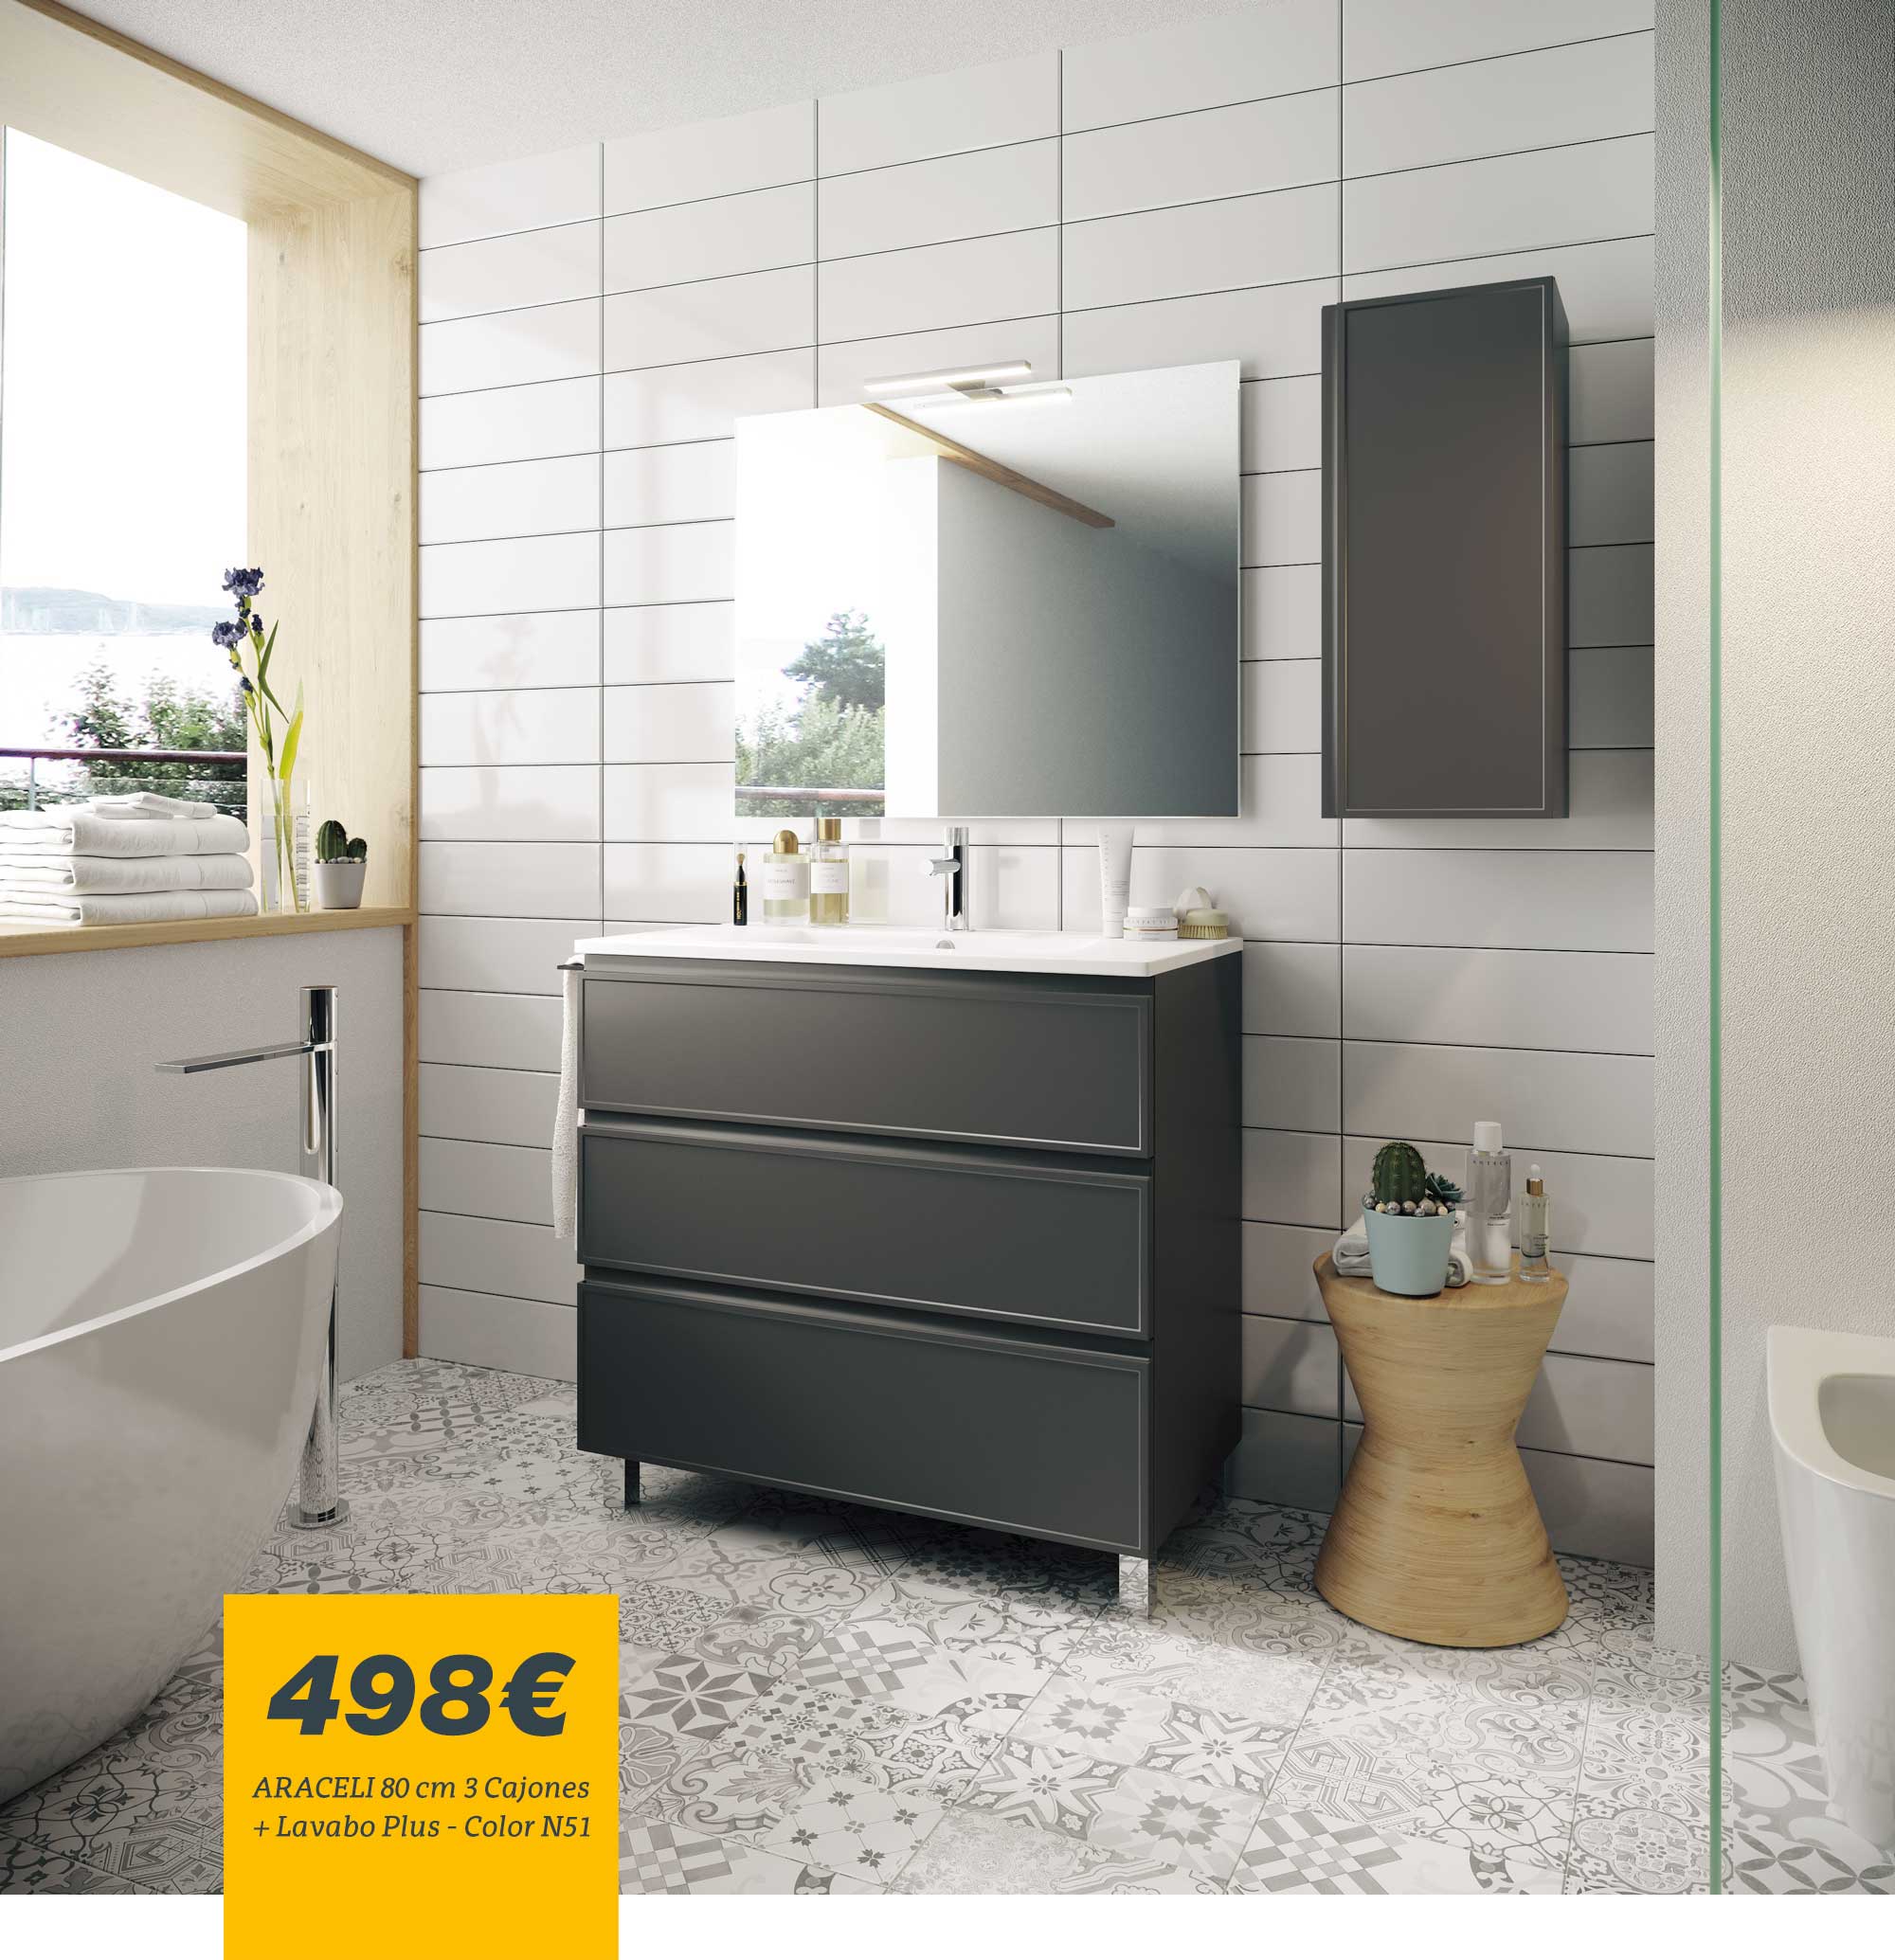 Inspiración de fin de semana: Espejos de baño con balda  Bathroom mirror  with shelf, Bathroom design, Beautiful bathrooms